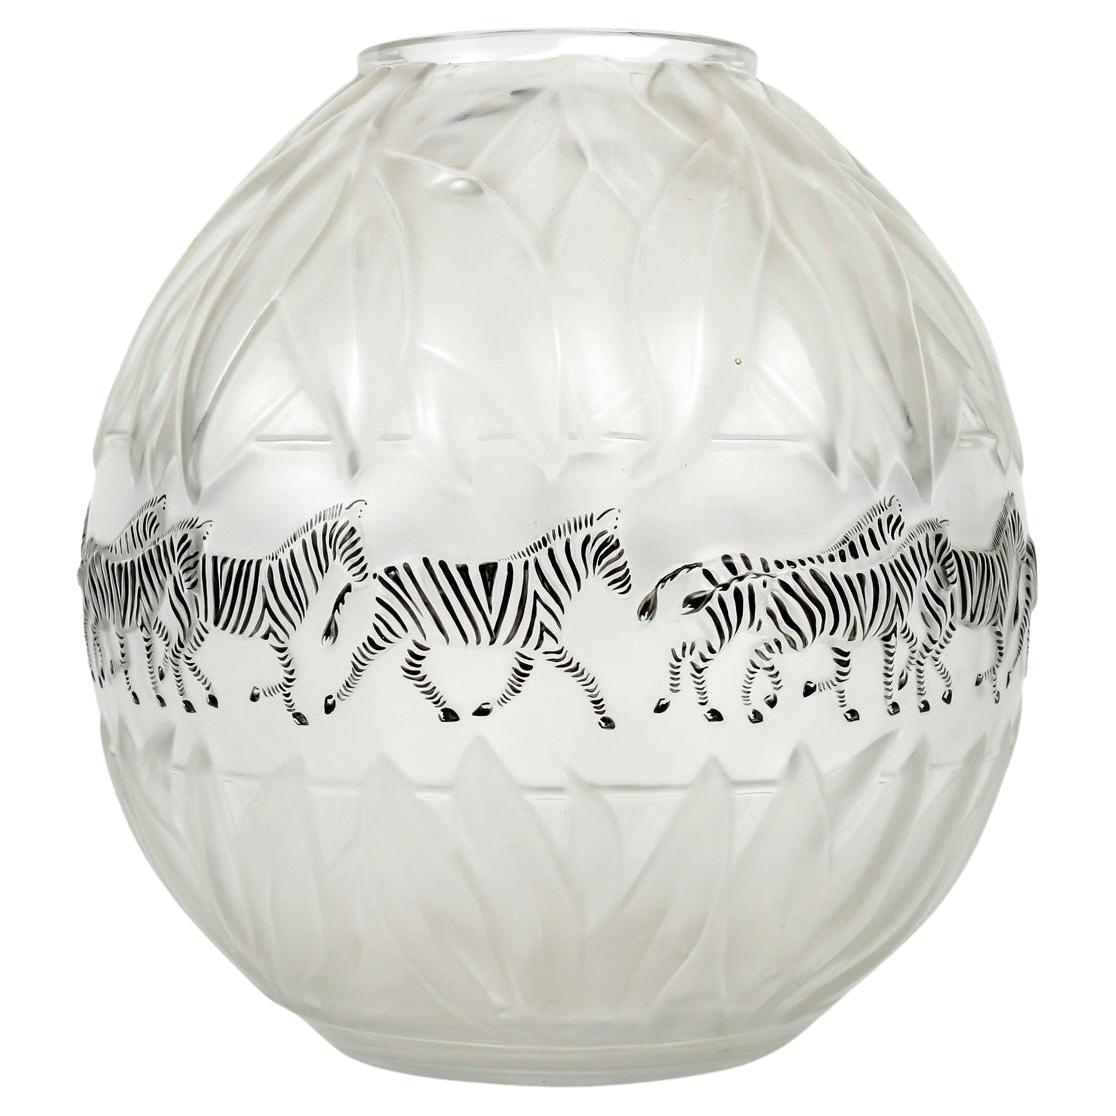 1991 Marie Claude Lalique - Vase Tanzania Zebras Cristal Black Enamel 